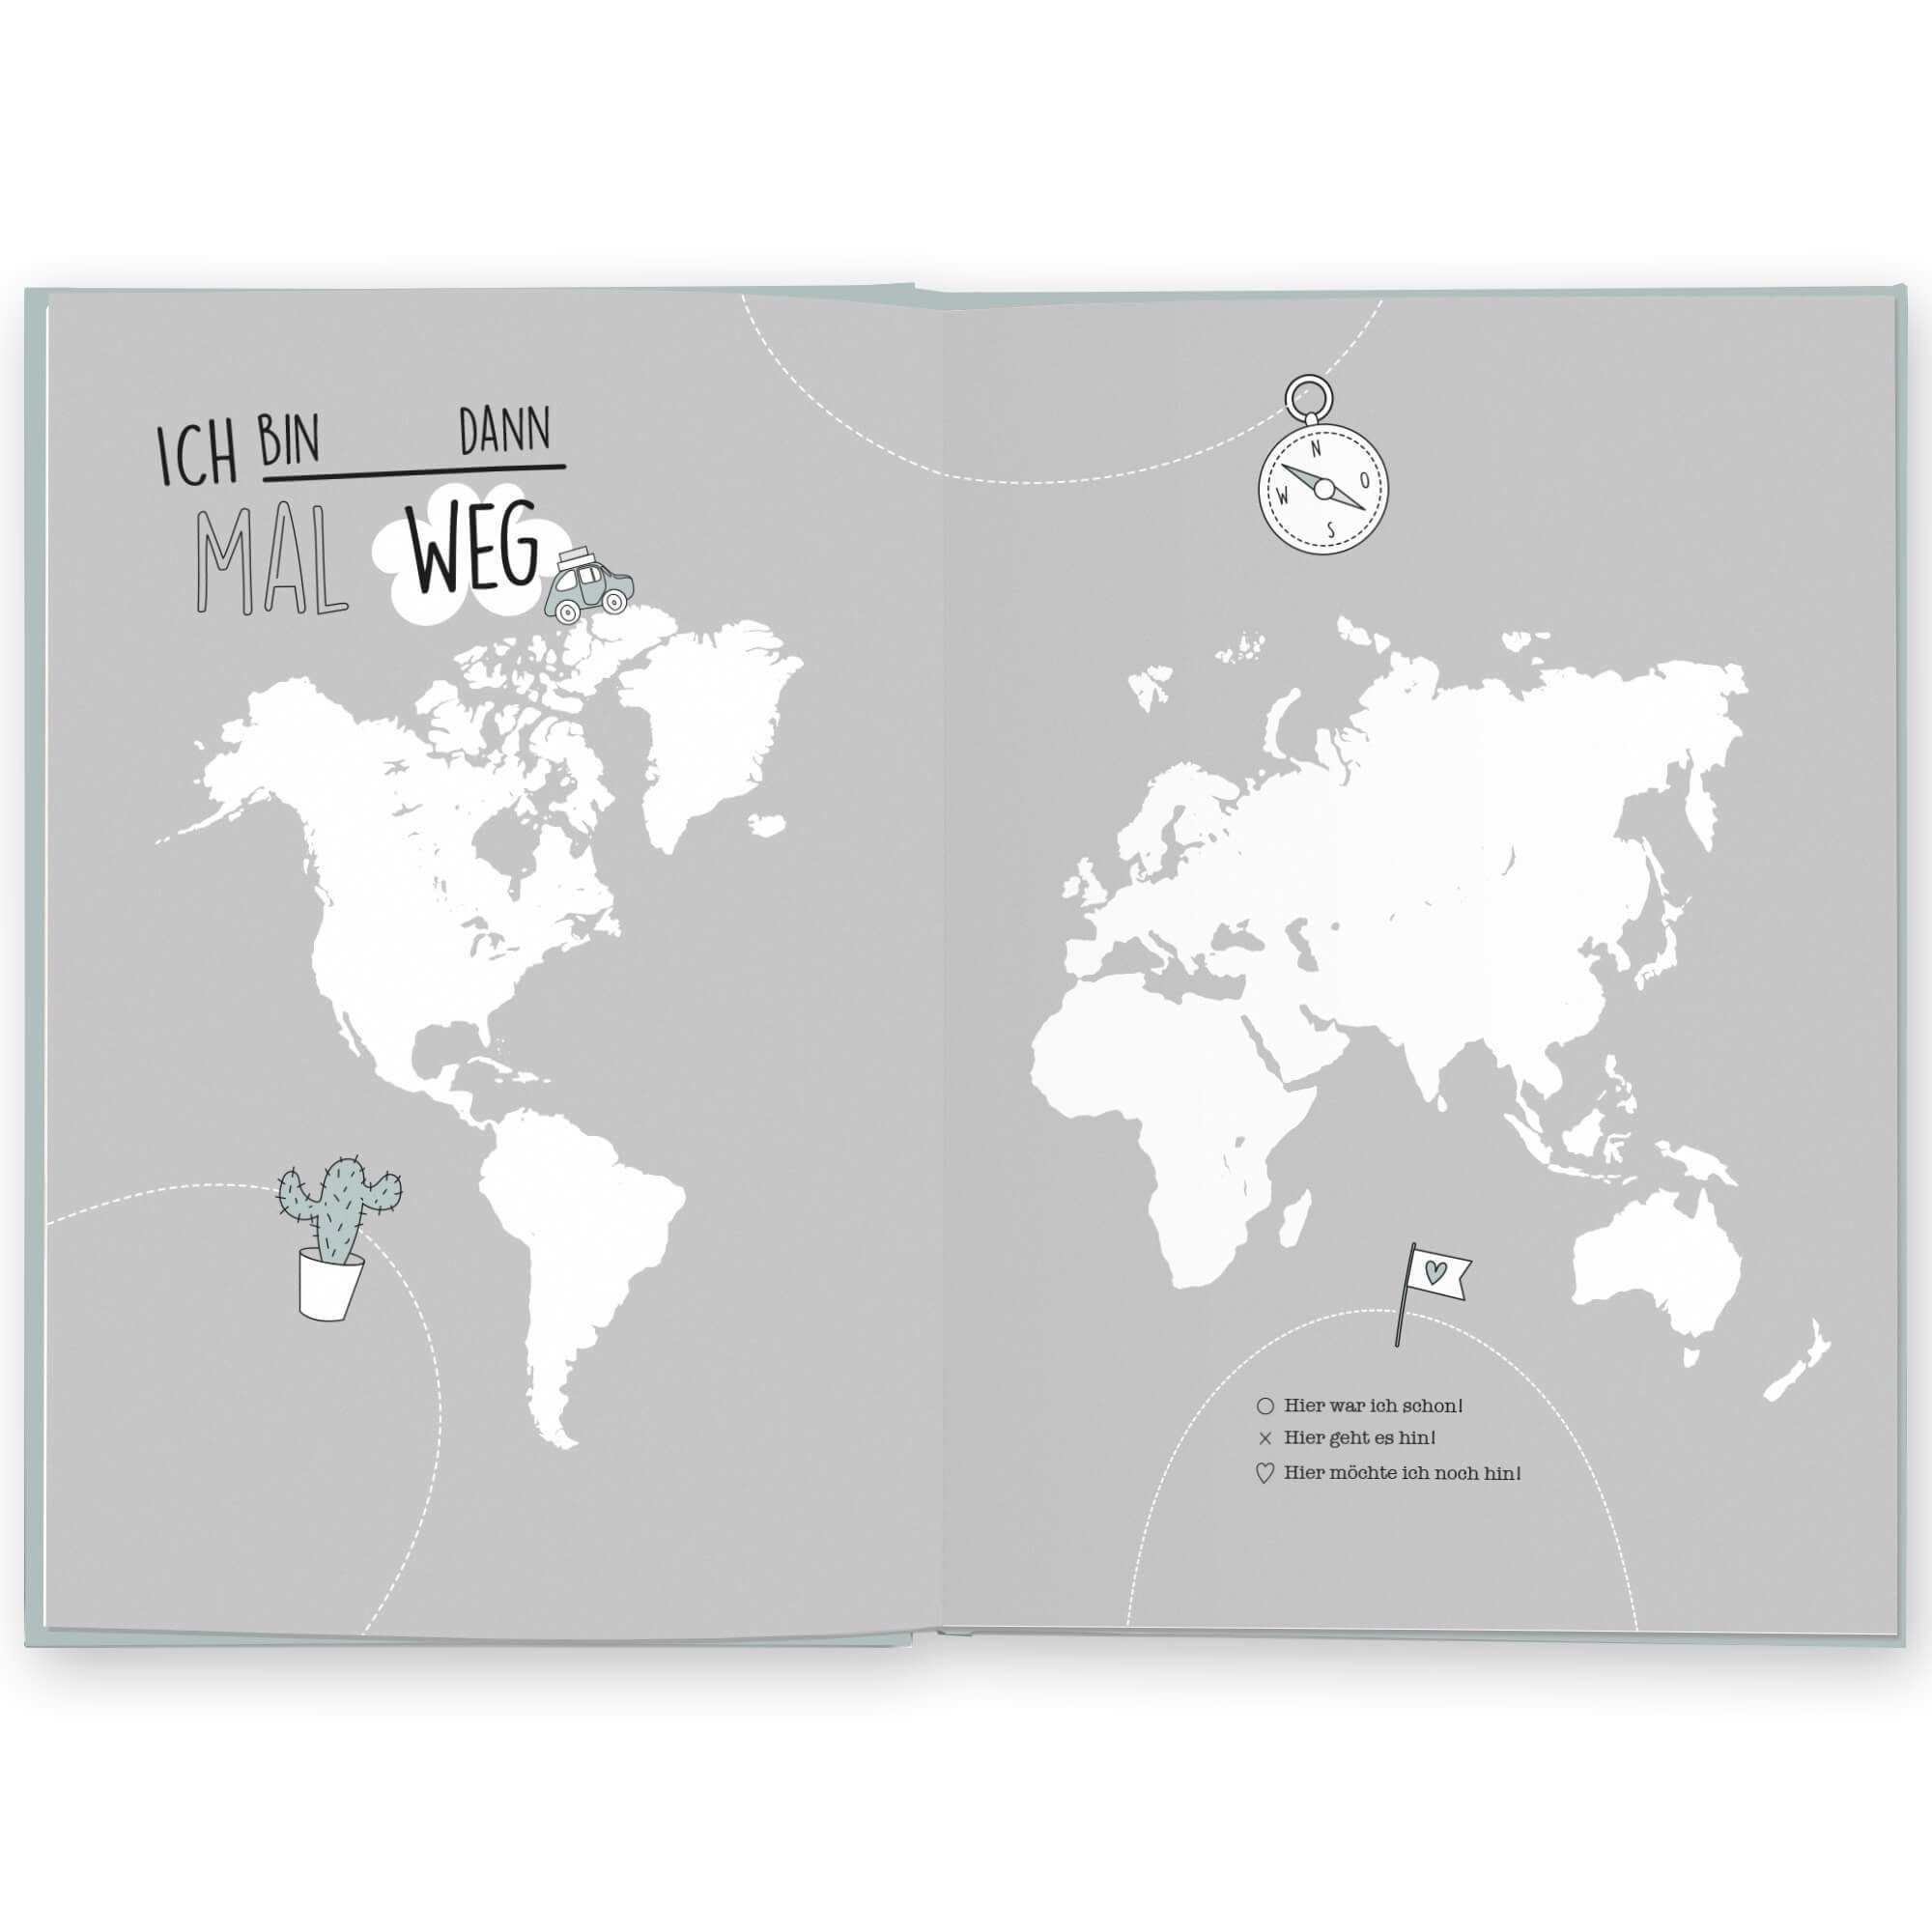 & spannenden zum mit Länder, zum interaktiv CUPCAKES selberschreiben, ausfüllen, für alle Aufgaben Reisetagebuch Notizbuch KISSES